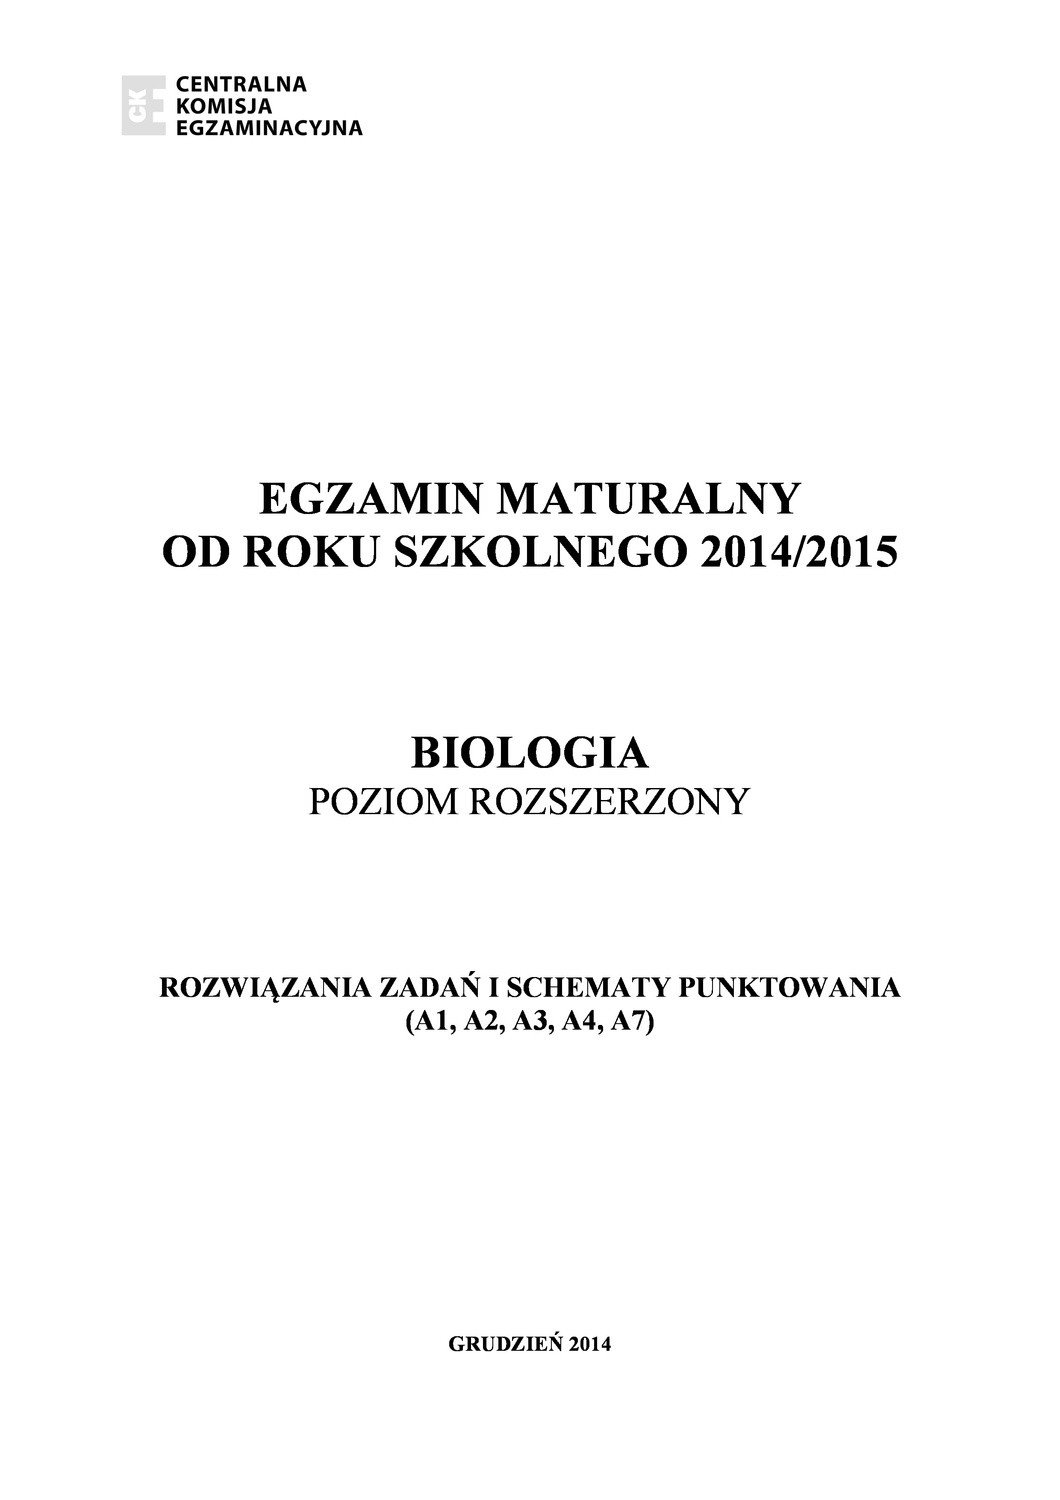 Próbna MATURA 2015 z biologii [KLUCZ ODPOWIEDZI] | Głos Wielkopolski